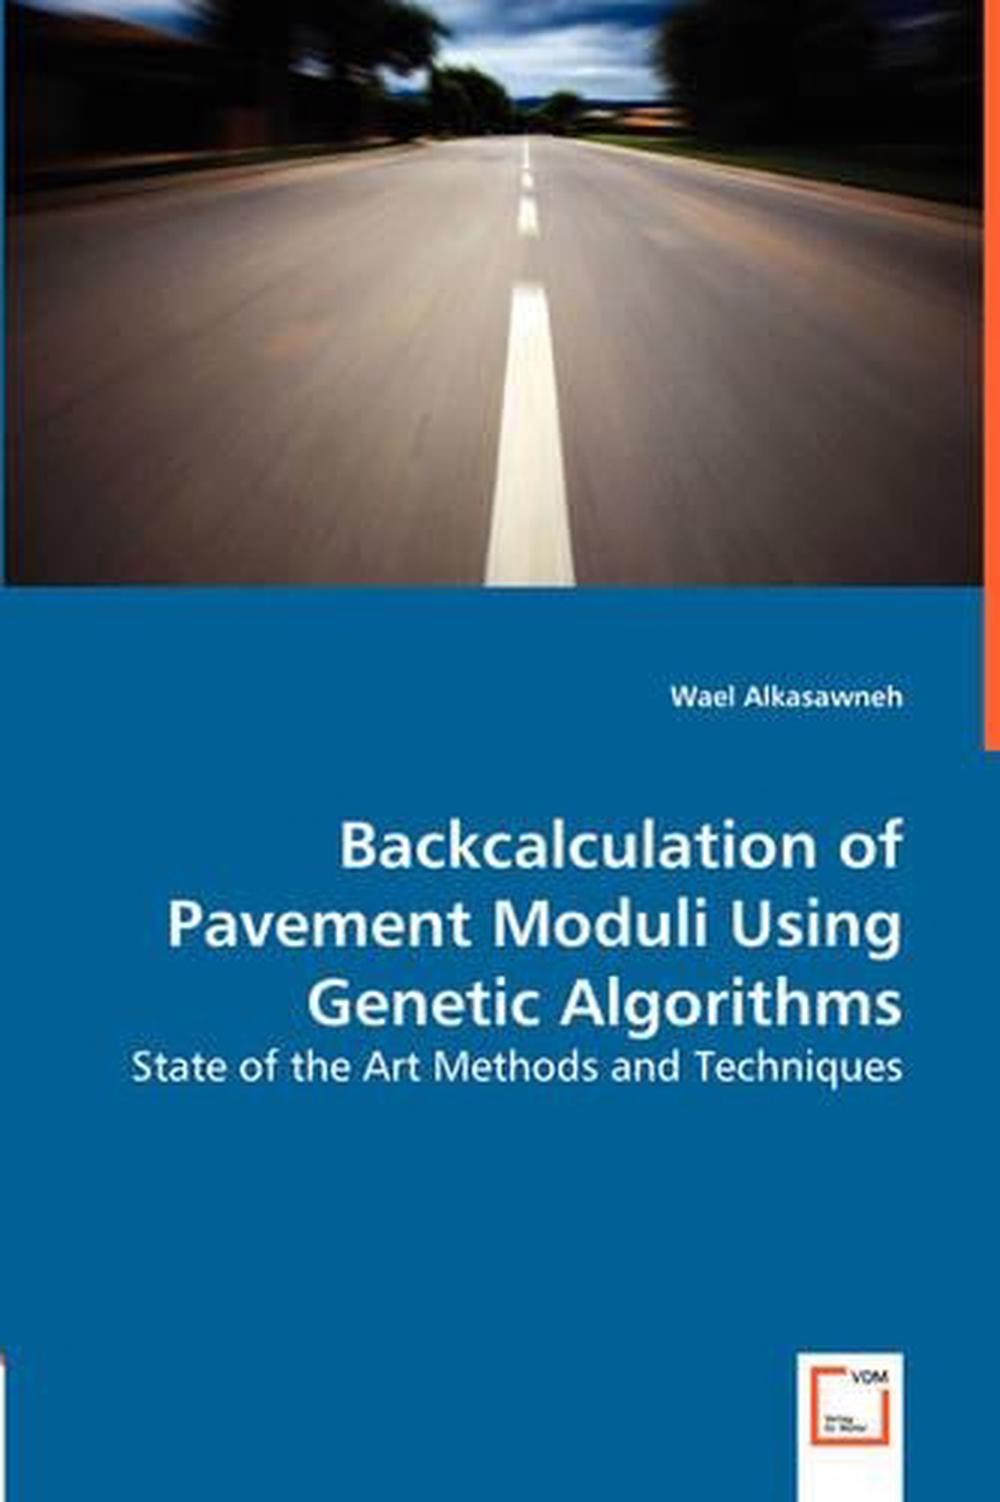 pavement backcalculation modulus